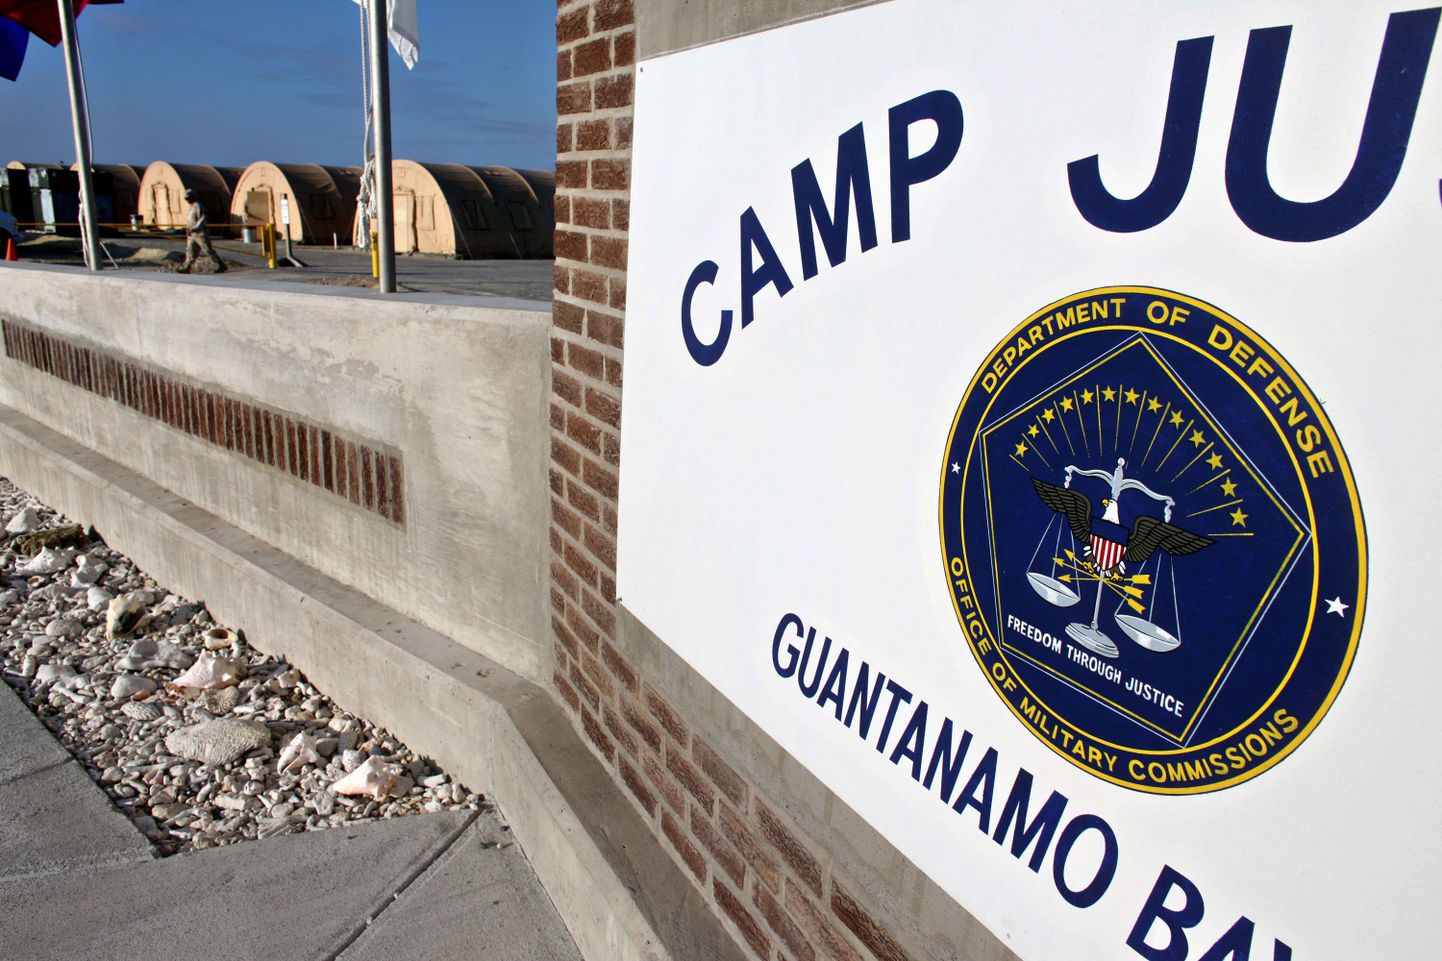 Guantanamo sõjaväebaasis asuv Camp Justice, kus toimuvad sõjatribunalid terrorikahtlusaluste üle.